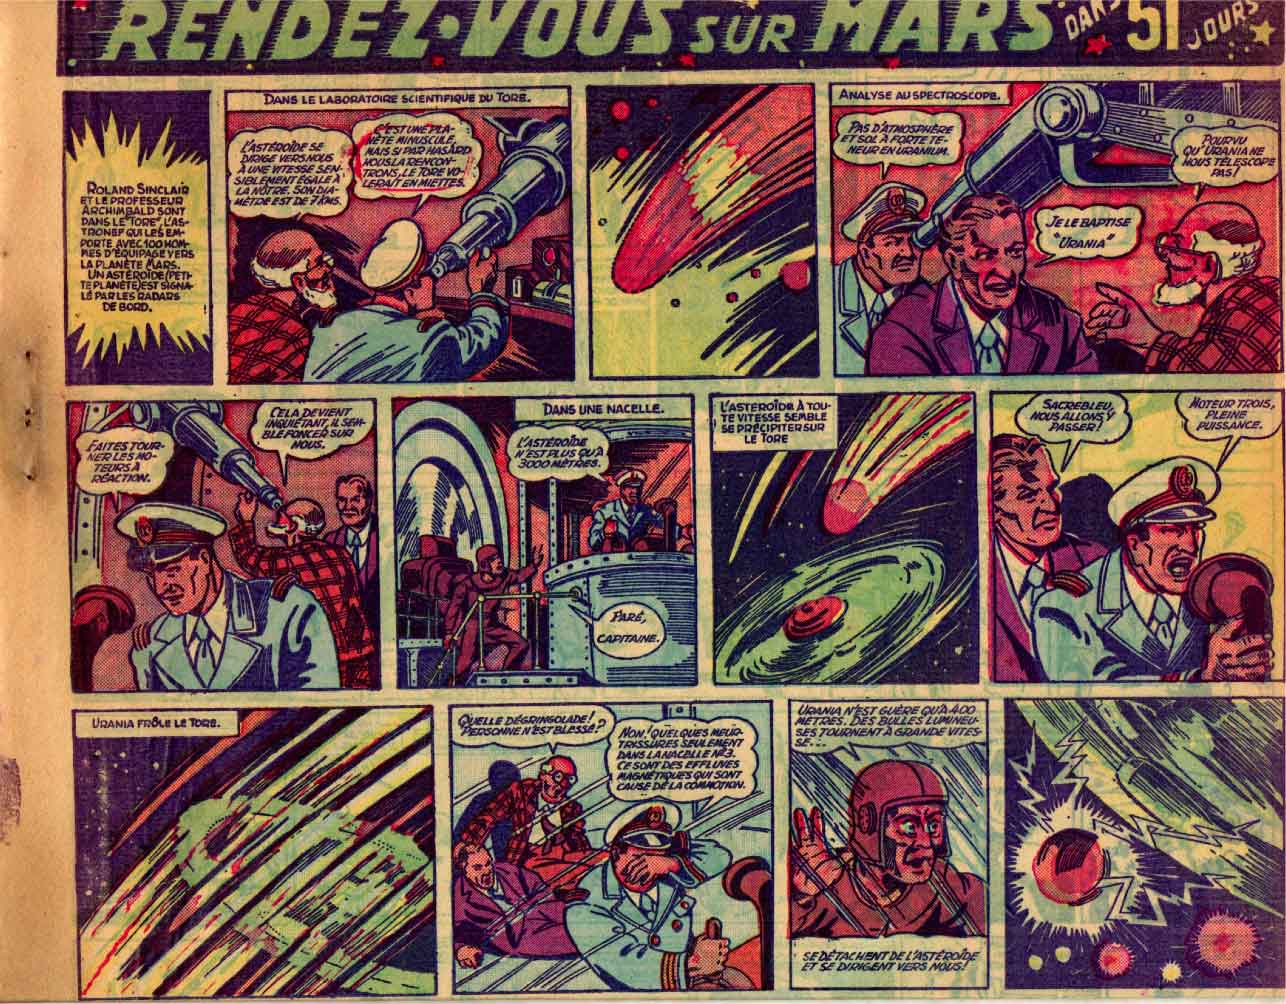 « Rendez-vous sur Mars dans 51 jours » Jeudi magazine n° 24 (14/11/1946).